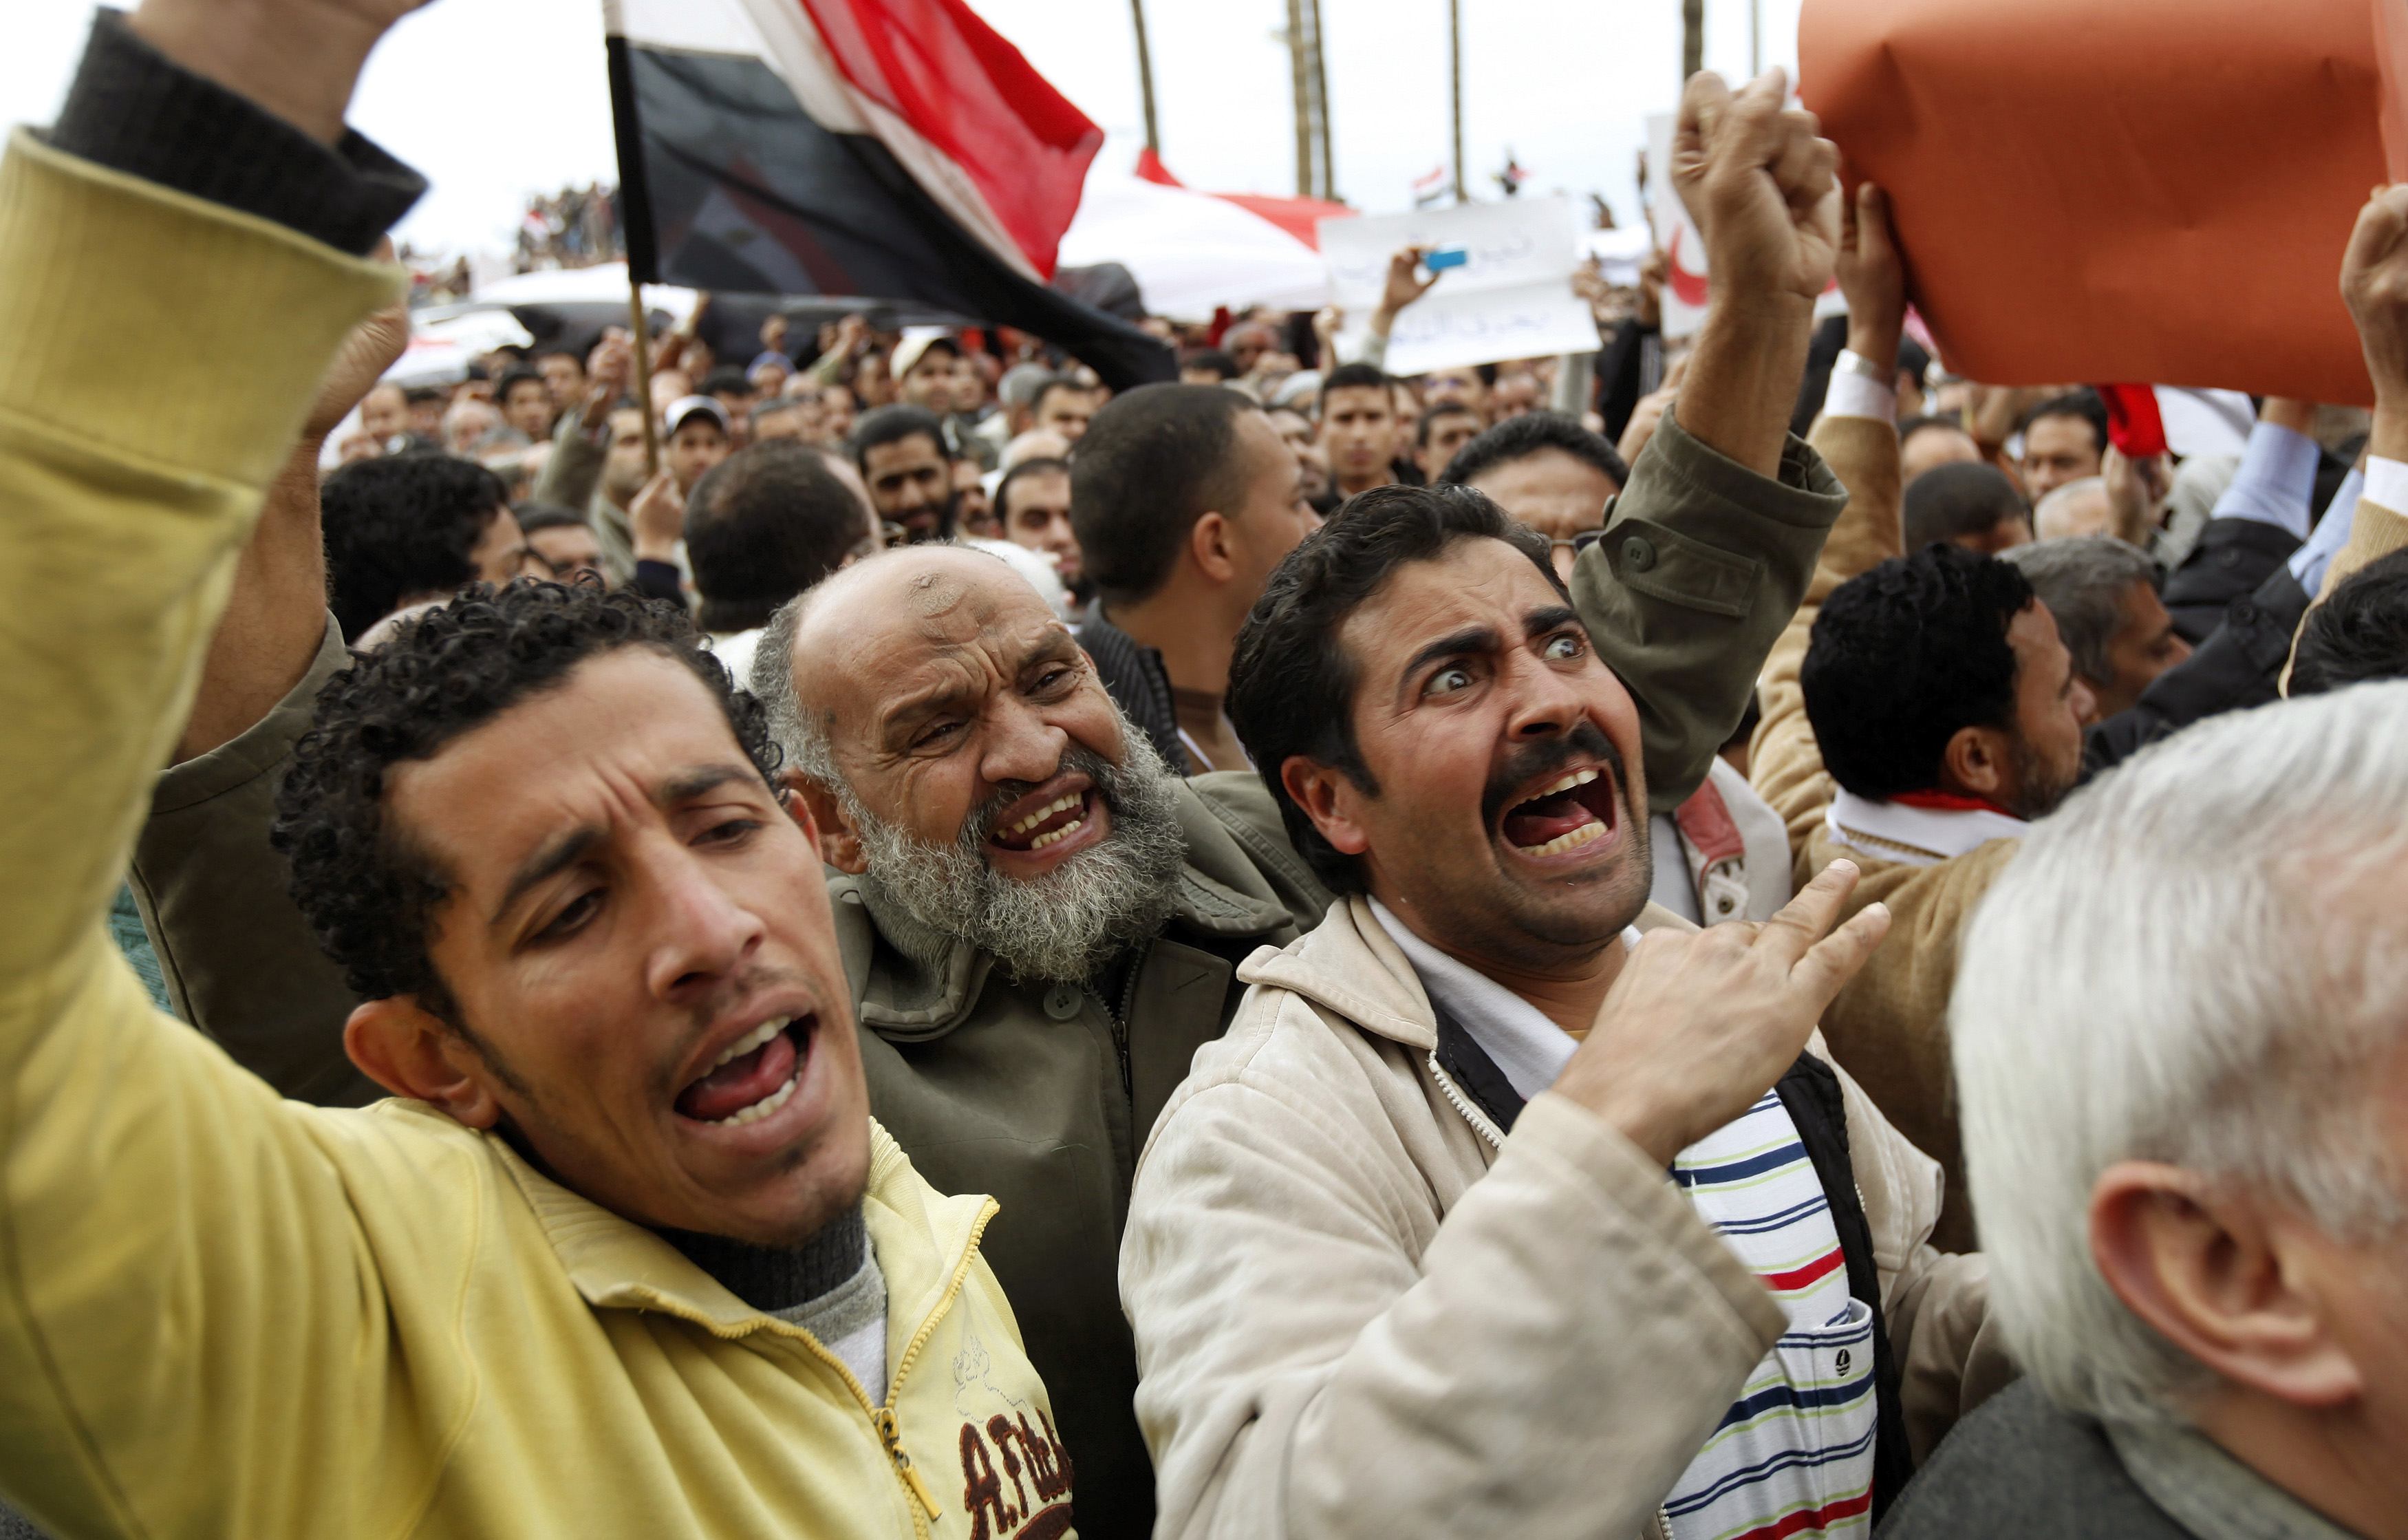 Να παραιτηθεί ο Μουμπάρακ φωνάζουν οι Αιγύπτιοι στην Αλεξάνδρεια. ΦΩΤΟ REUTERS